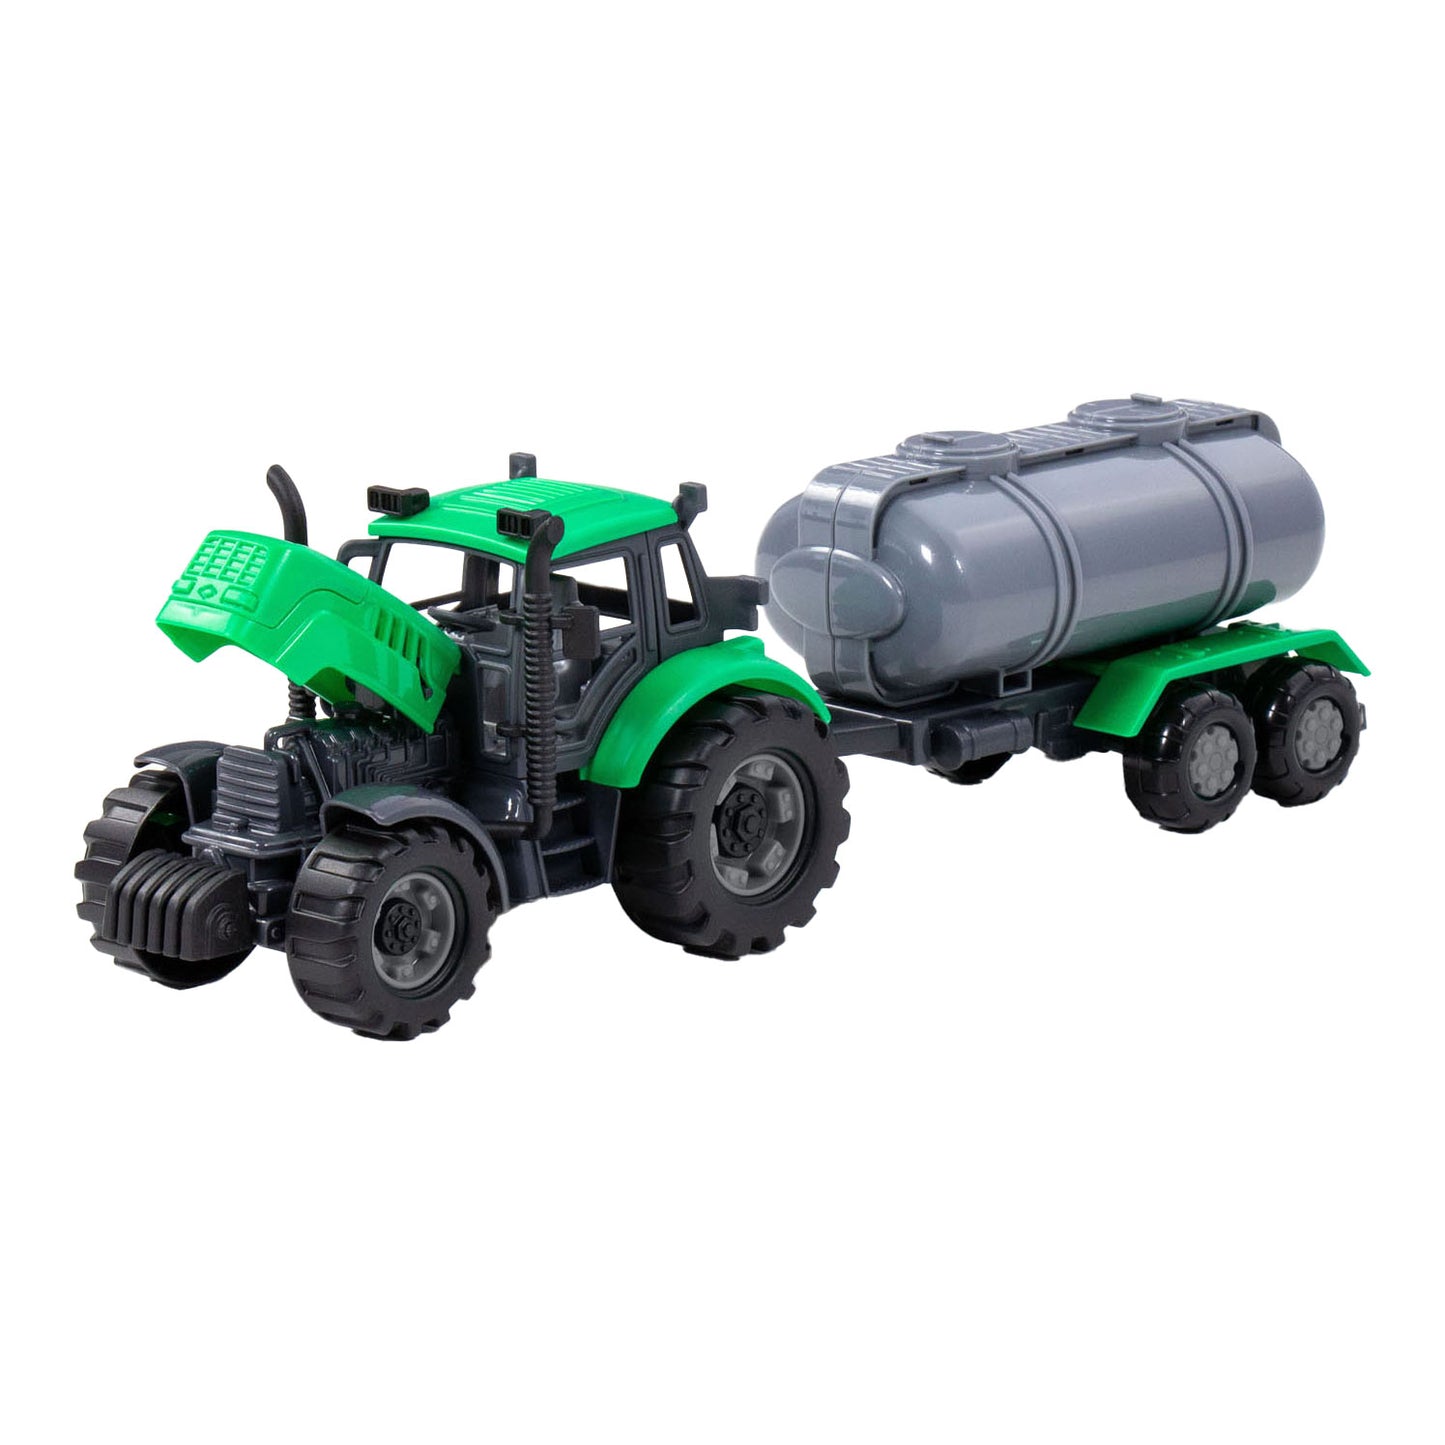 Cavallino Toys Cavallino Tractor met Tankwagen Groen, Schaal 1:32